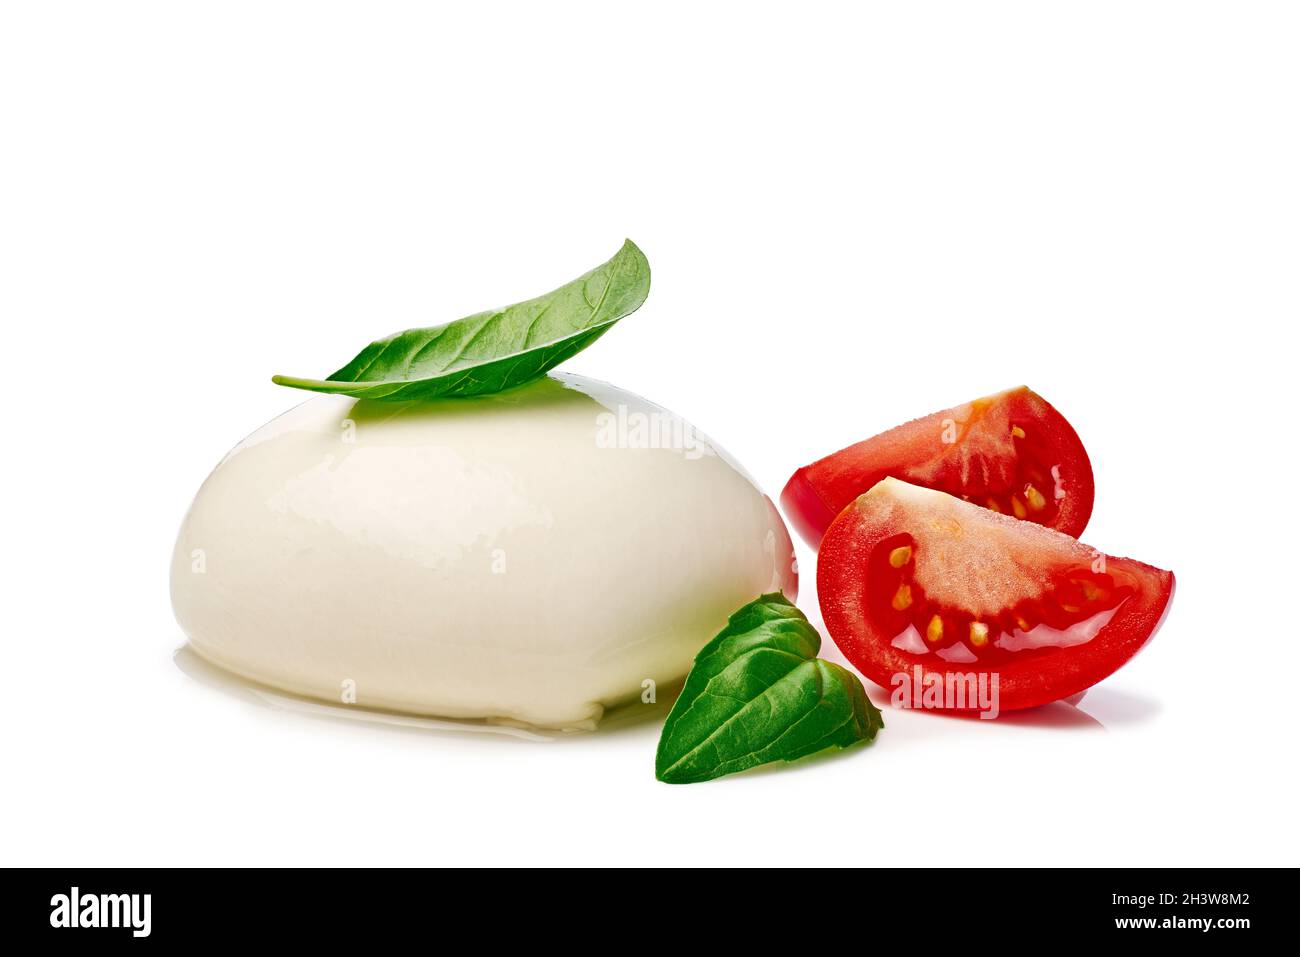 Mozzarella with tomato slices and basil on white background Stock Photo